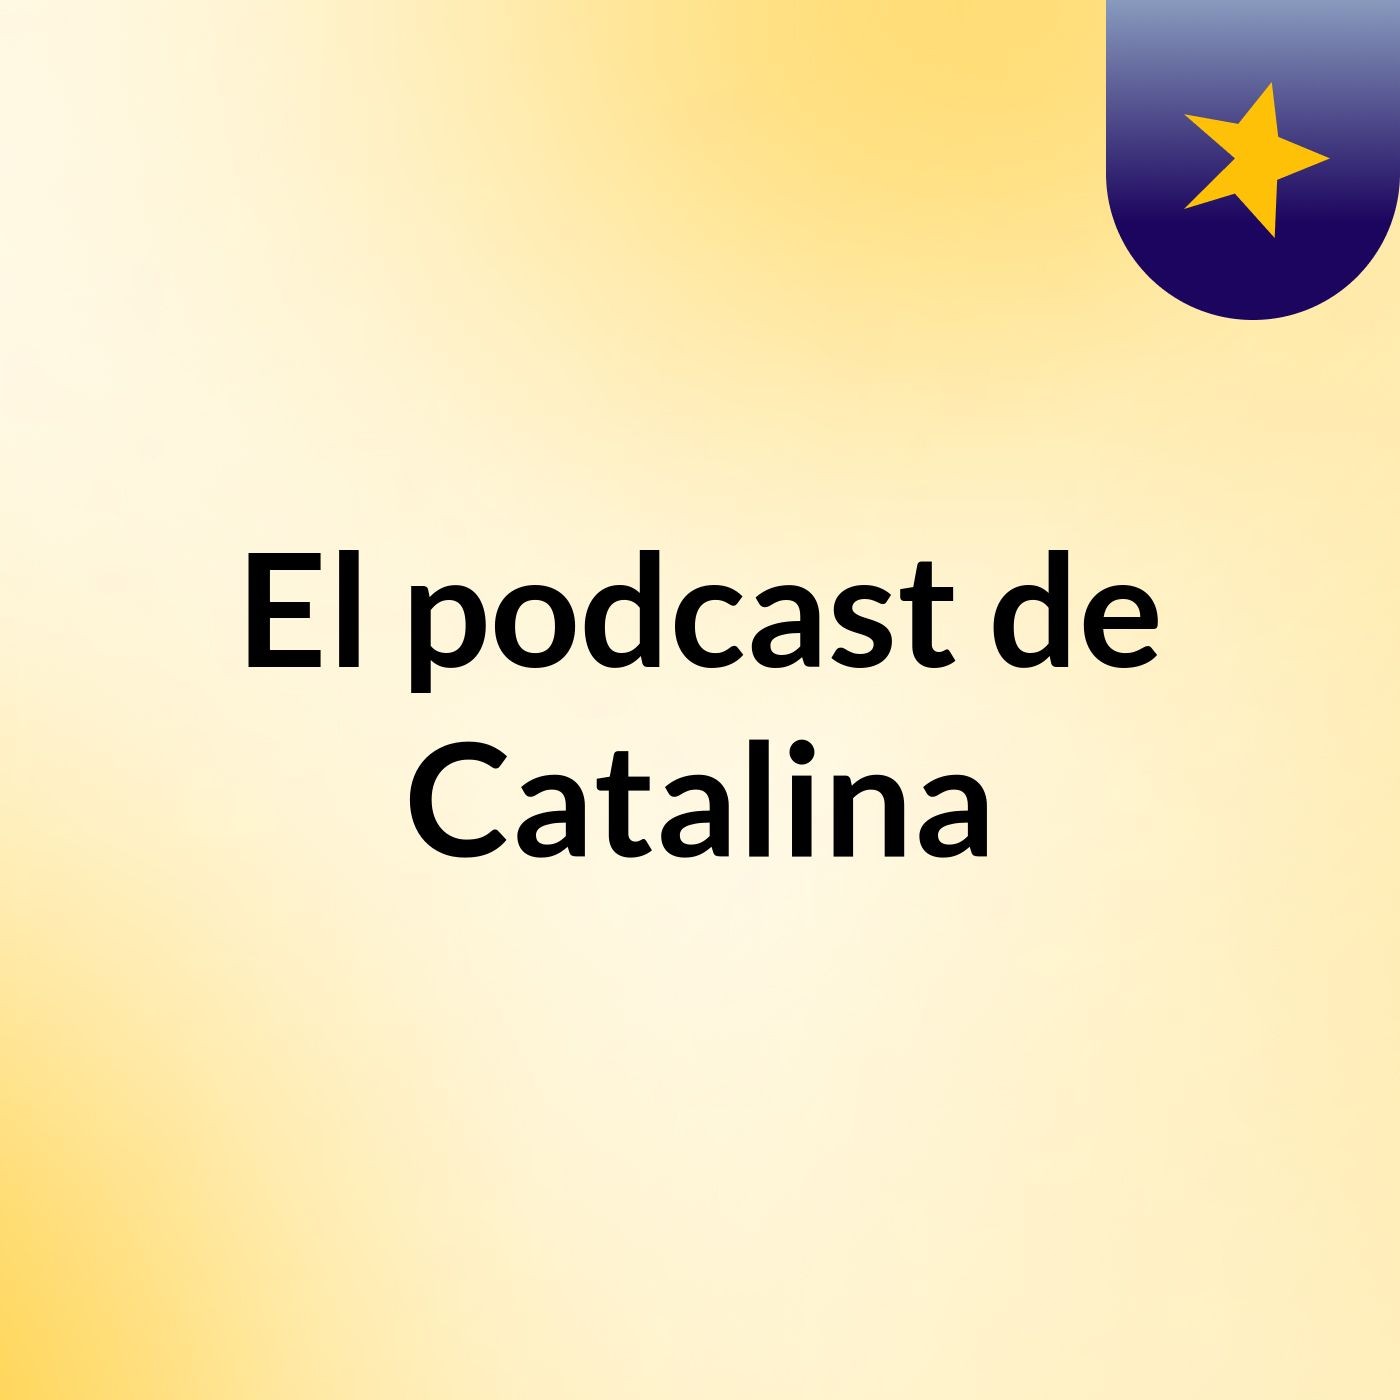 Episodio 4 - El podcast de Catalina